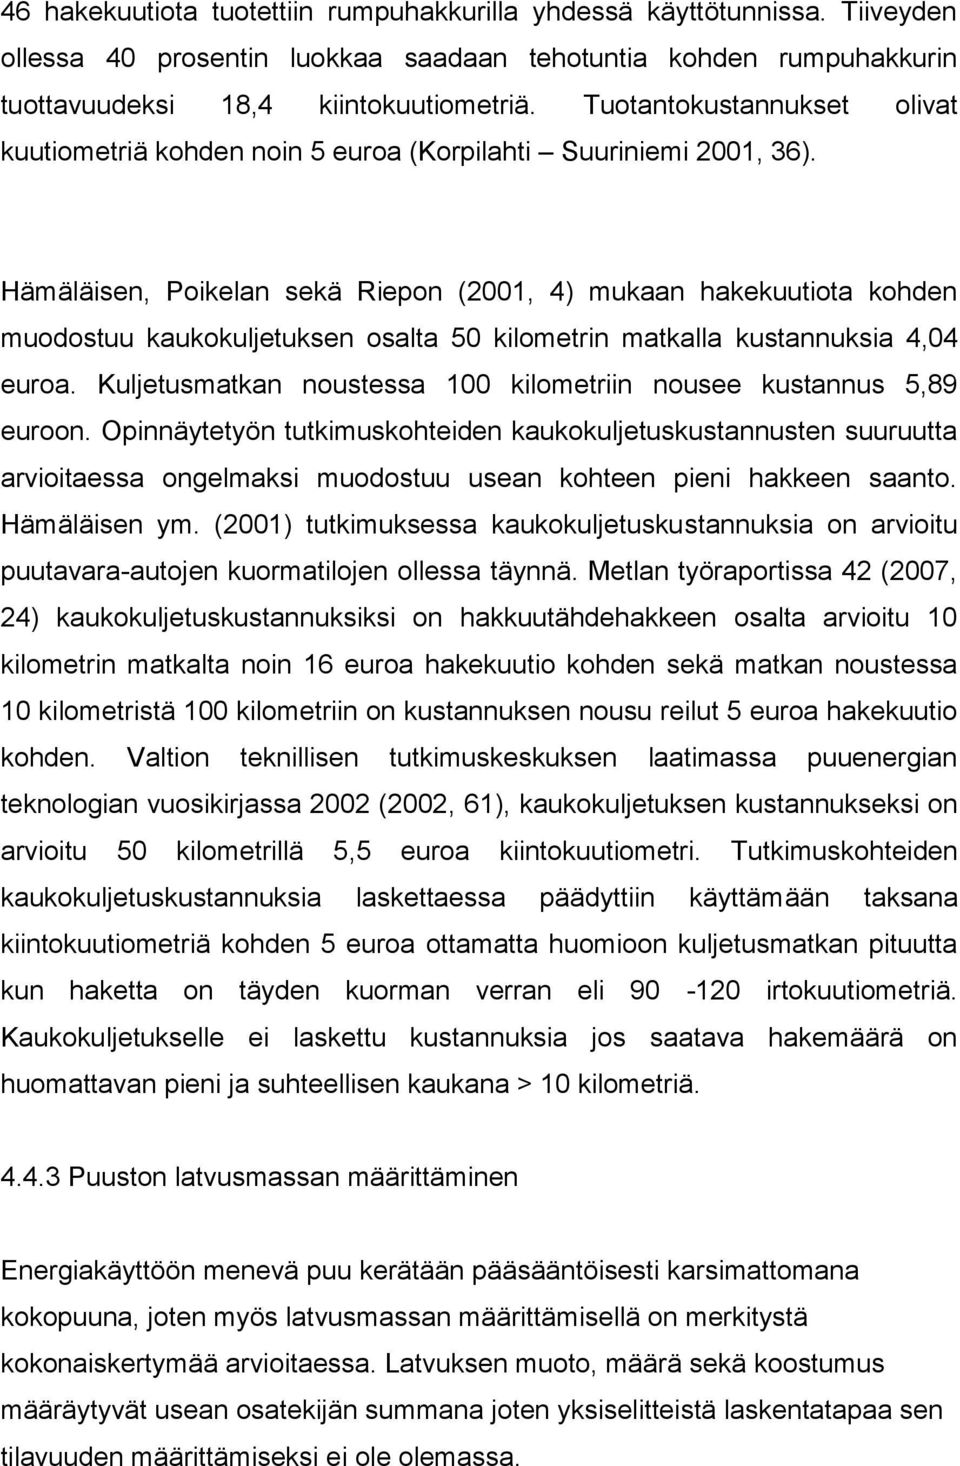 Hämäläisen, Poikelan sekä Riepon (2001, 4) mukaan hakekuutiota kohden muodostuu kaukokuljetuksen osalta 50 kilometrin matkalla kustannuksia 4,04 euroa.